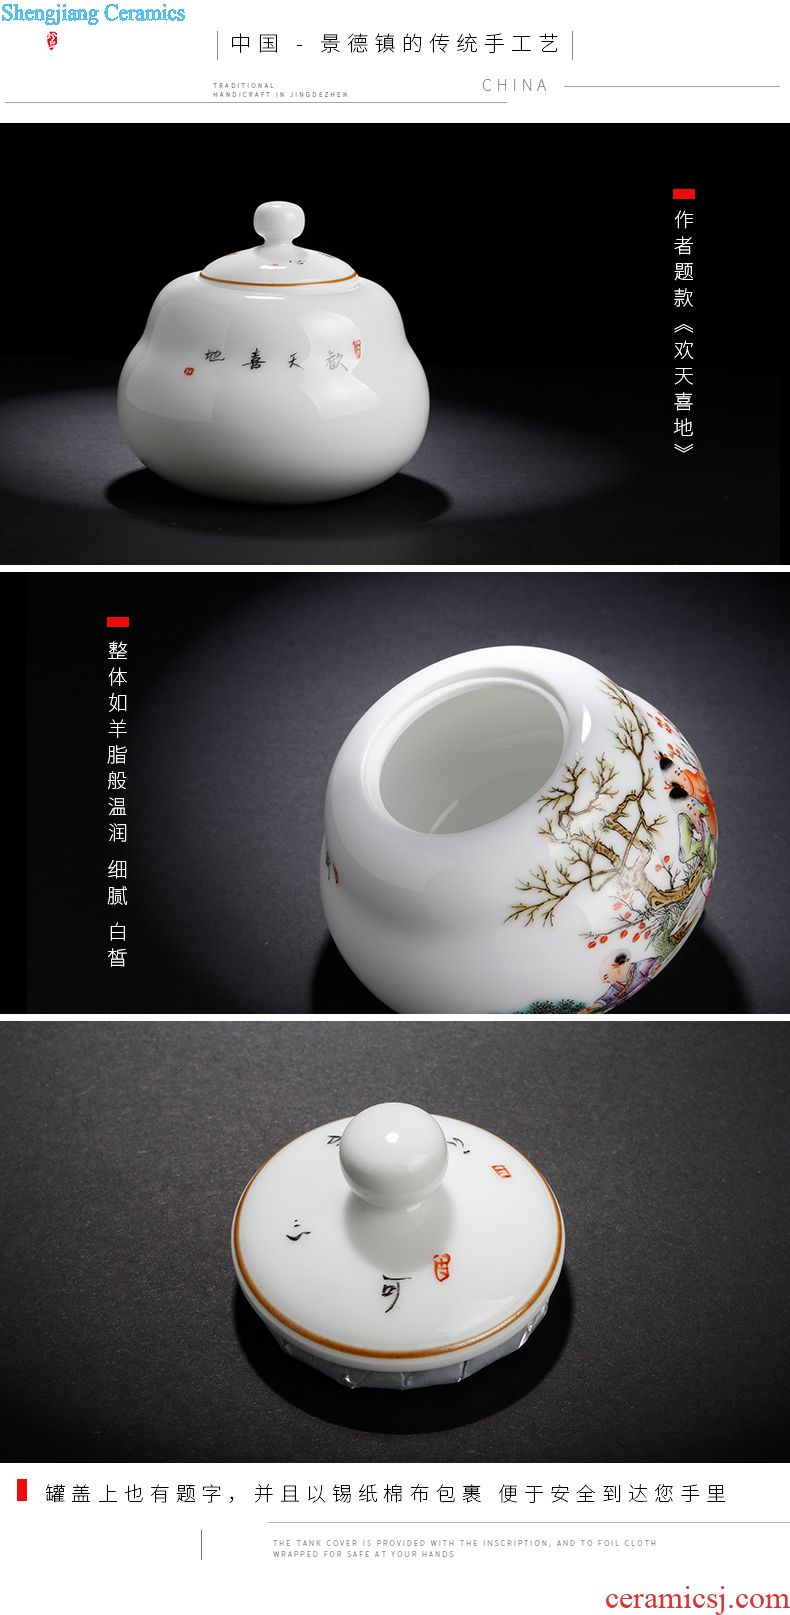 Owl kiln Jingdezhen colored enamel antique tea hand draw the general pot of small ceramic tea pot Classical design